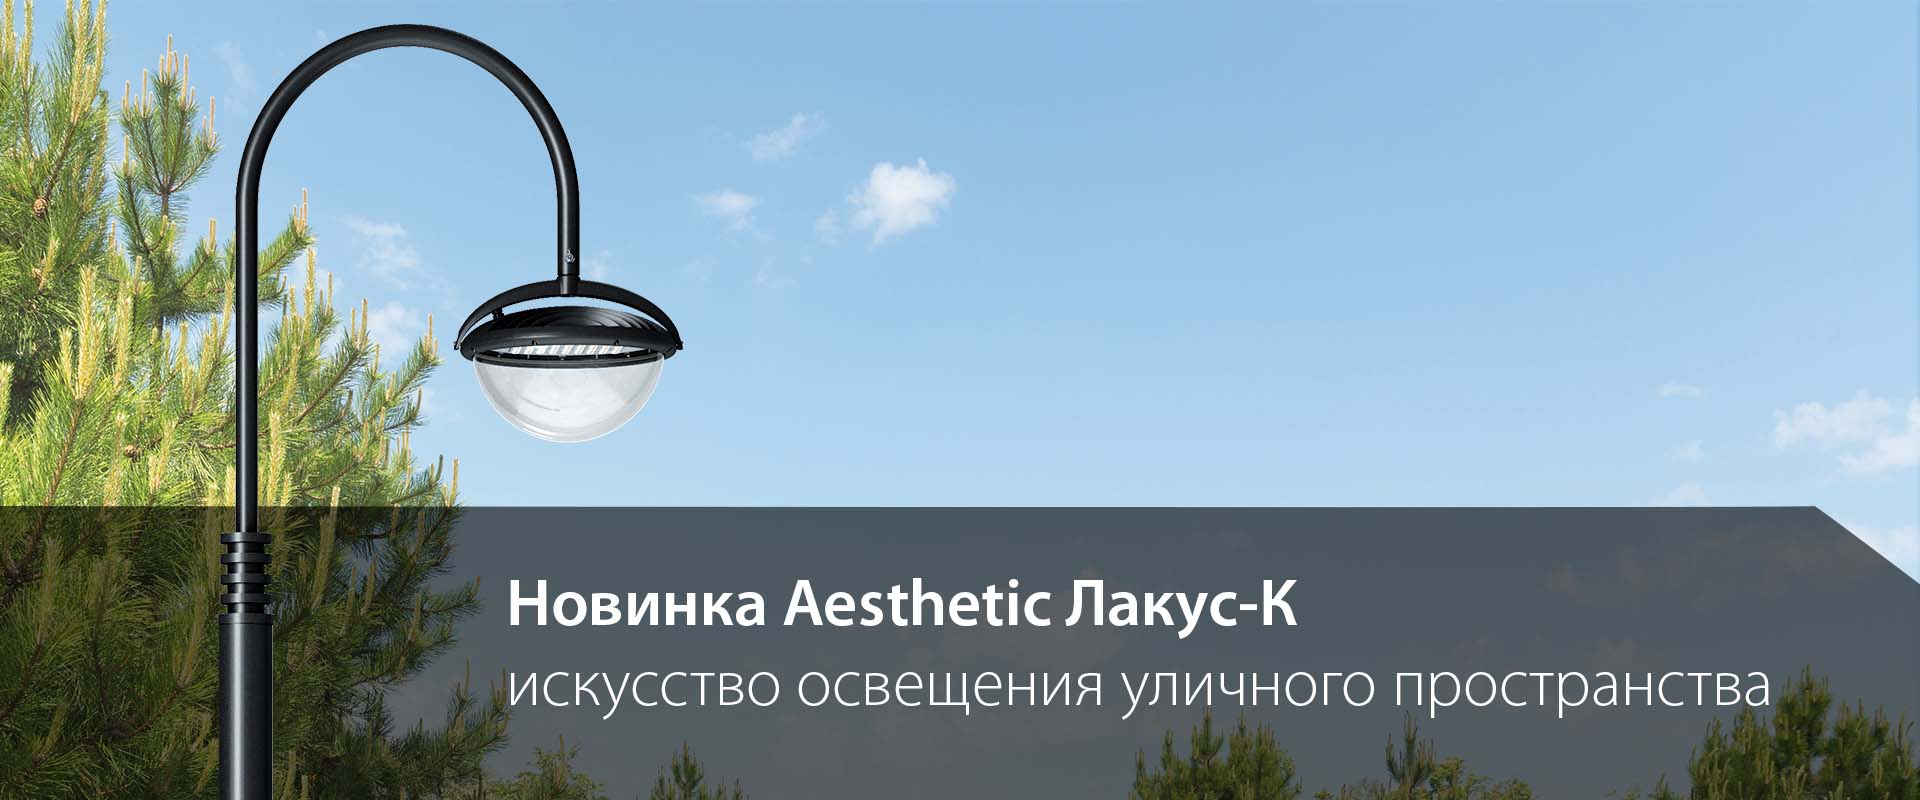 Лакус-К – новый осветительный комплект из линейки Aesthetic!